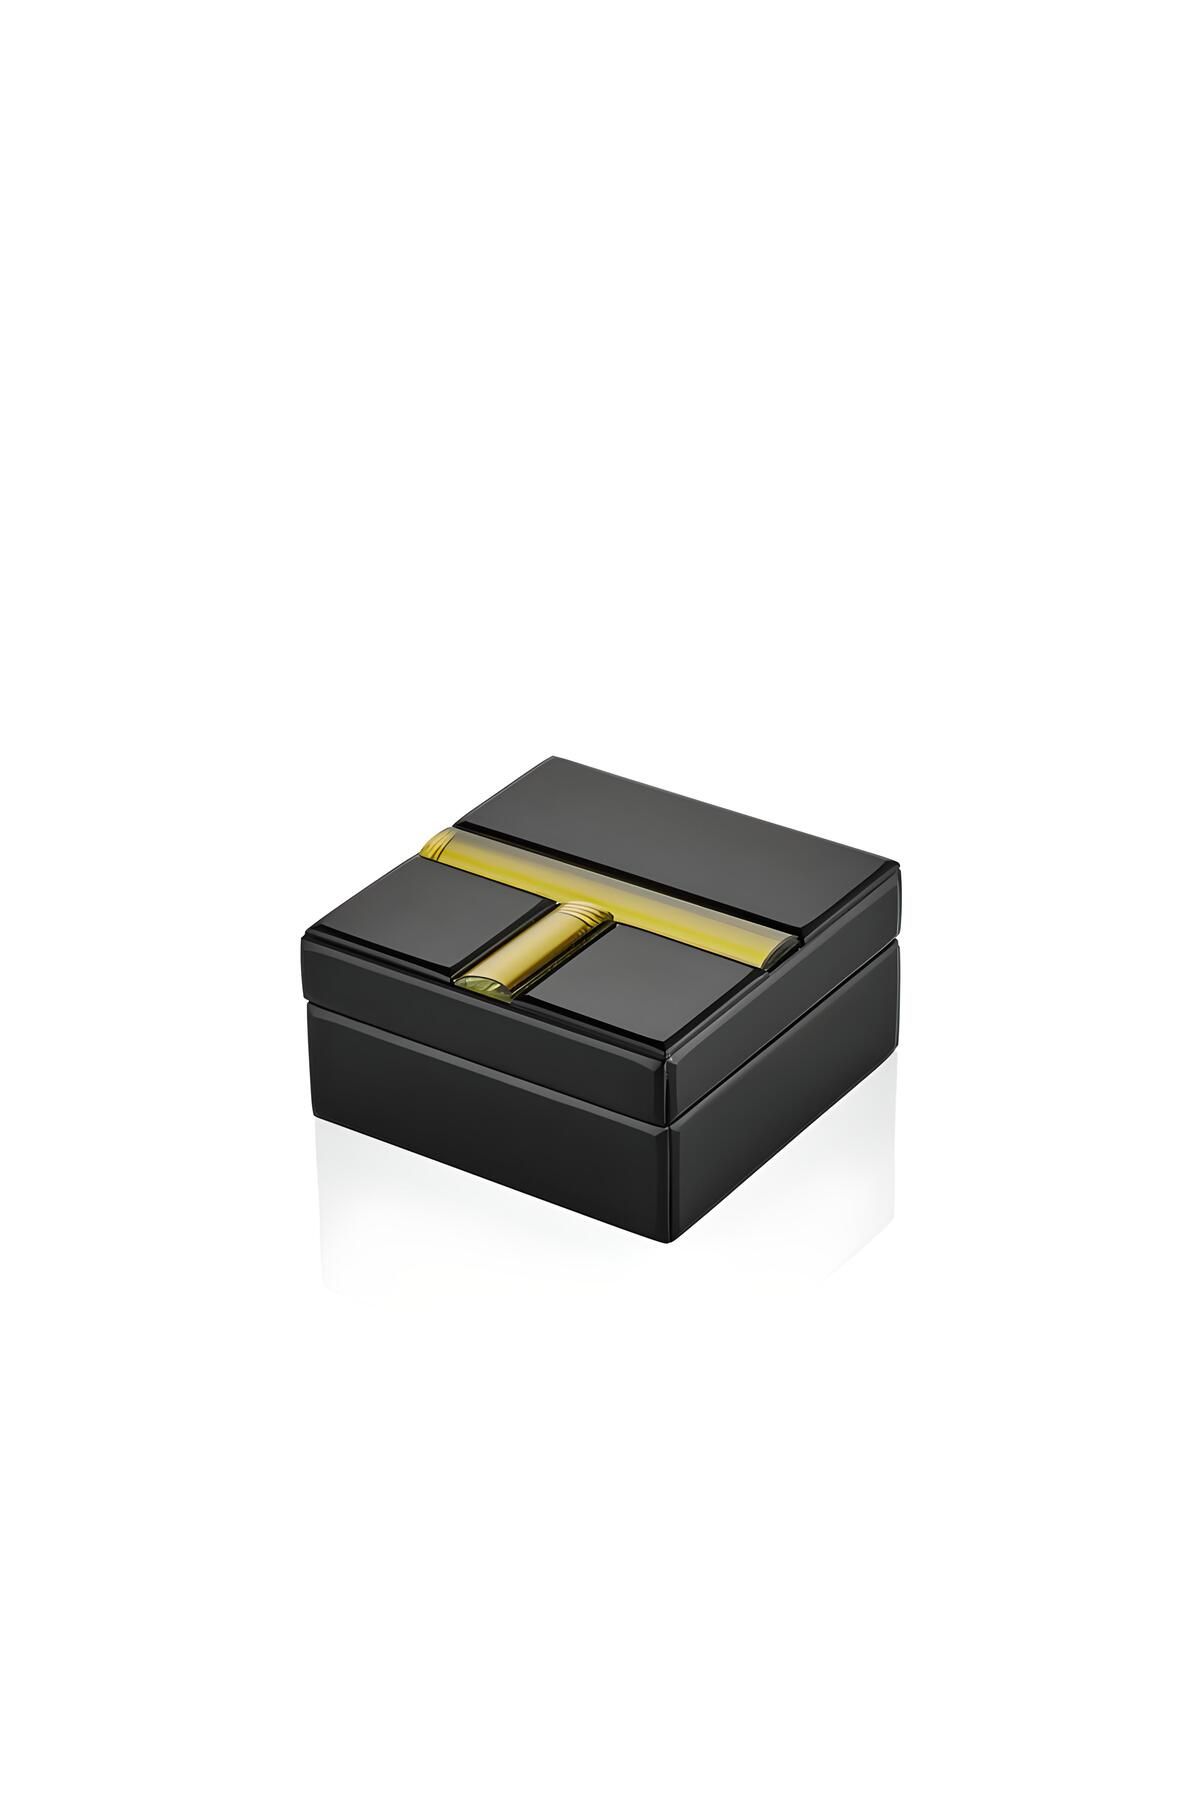 LAMEDORE GOLD STRIP BLACK SMALL SQUARE BOX